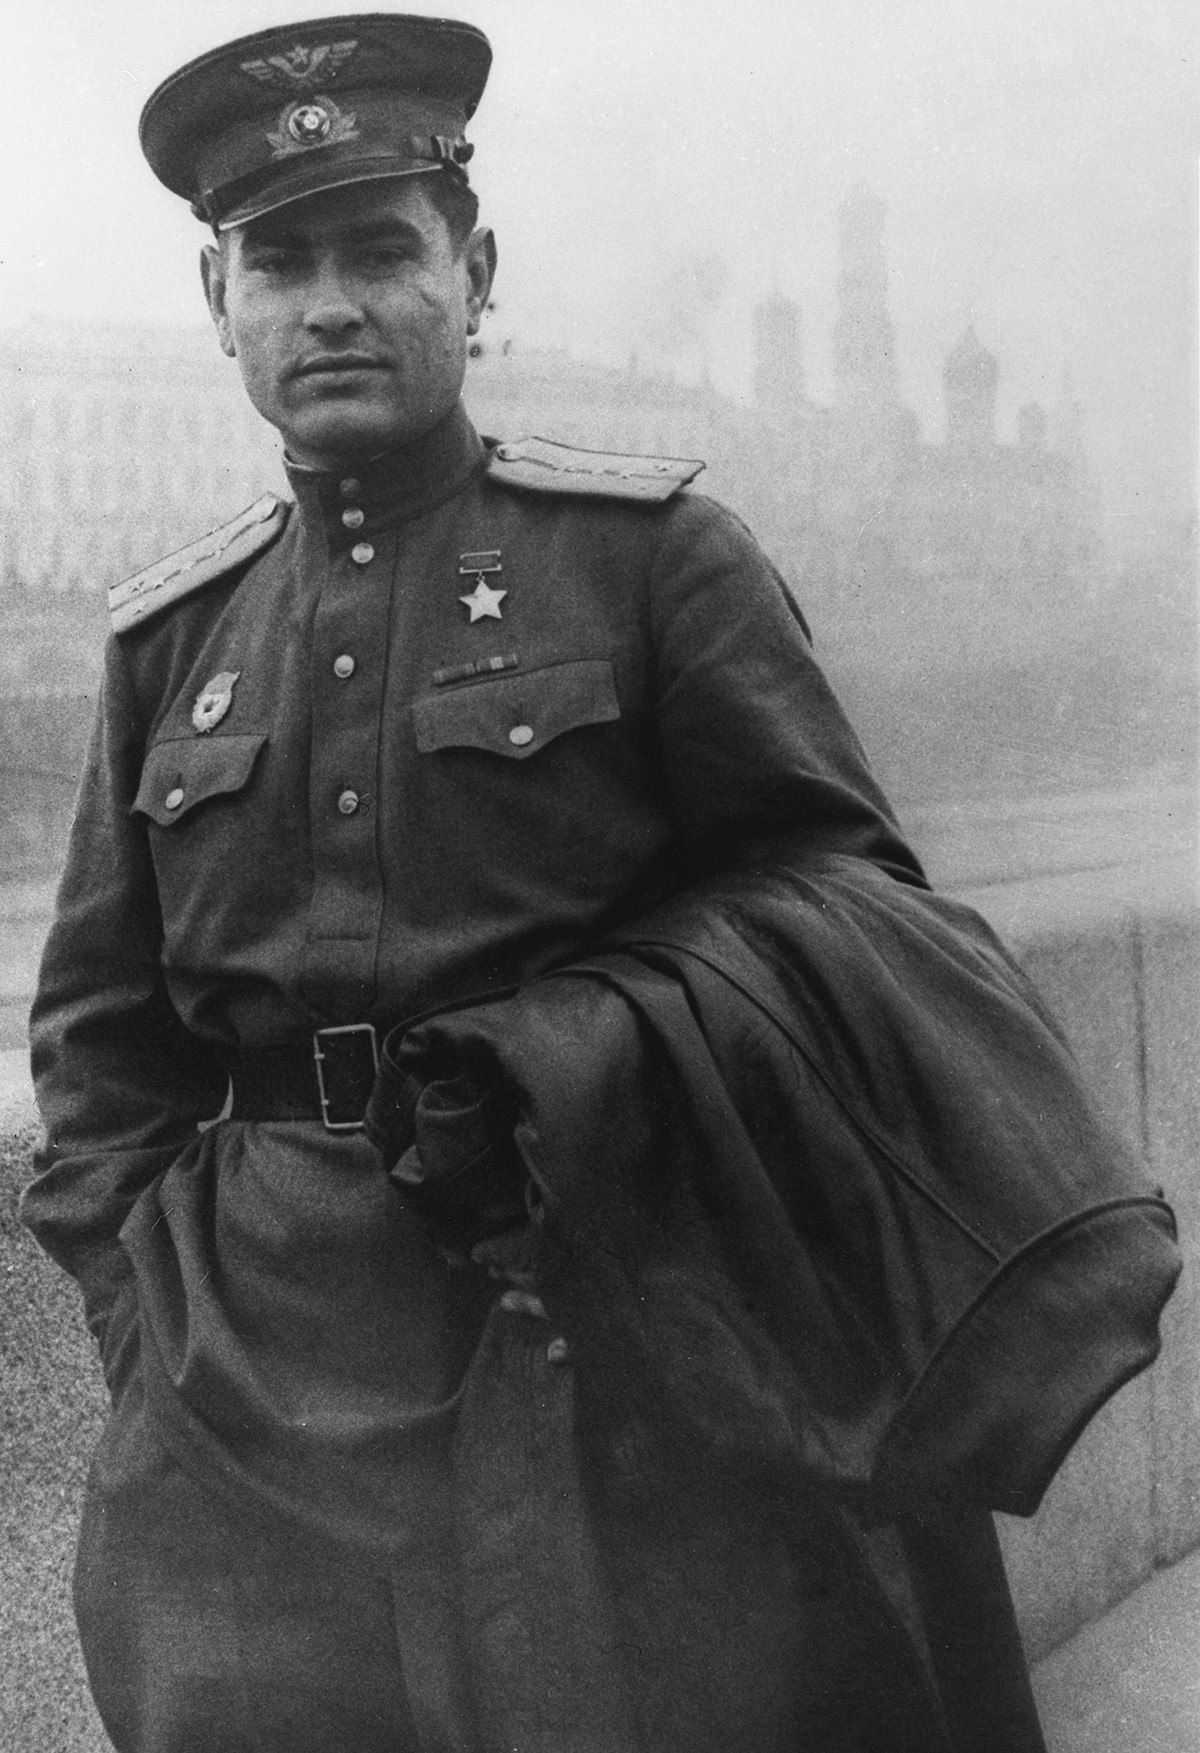 1. siječnja 1943. Podvig Alekseja Maresjeva se pročuo zahvaljujući publikaciji posvećenoj njegovom podvigu koju je pod nazivom 